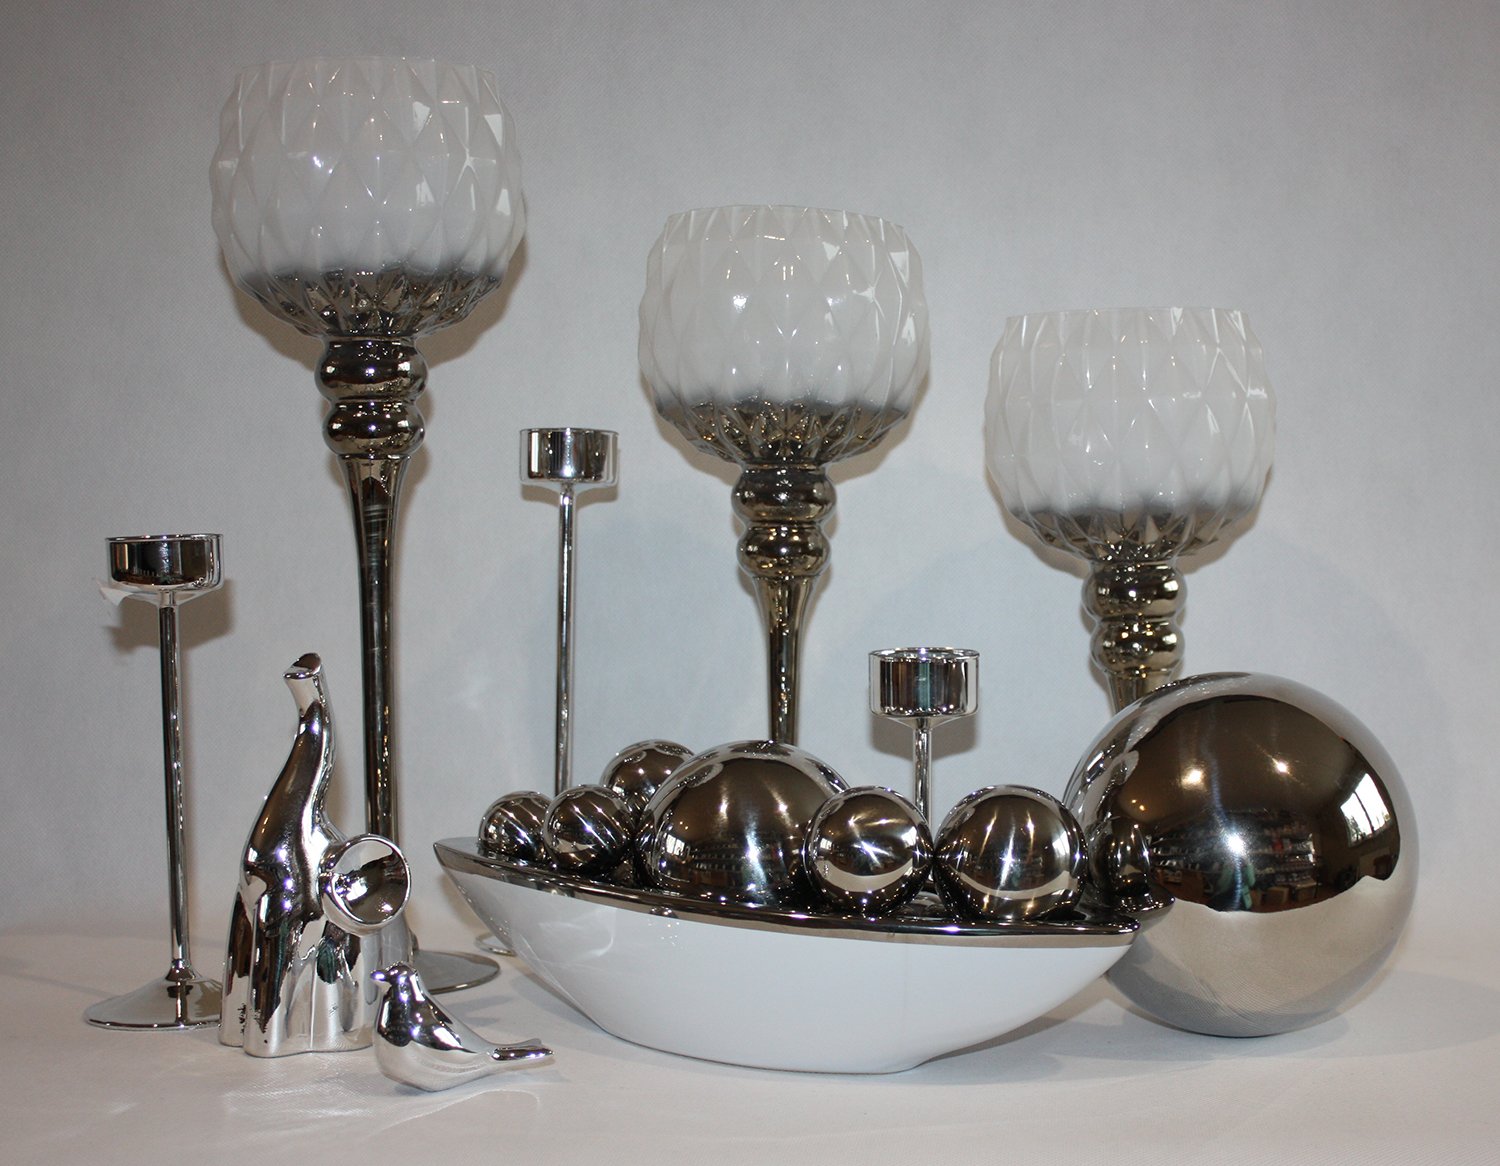 Шар хром серебро. Декоративный хром. Шар хром 5"/13 см серебро. Серебряные шары декоративные настольные.